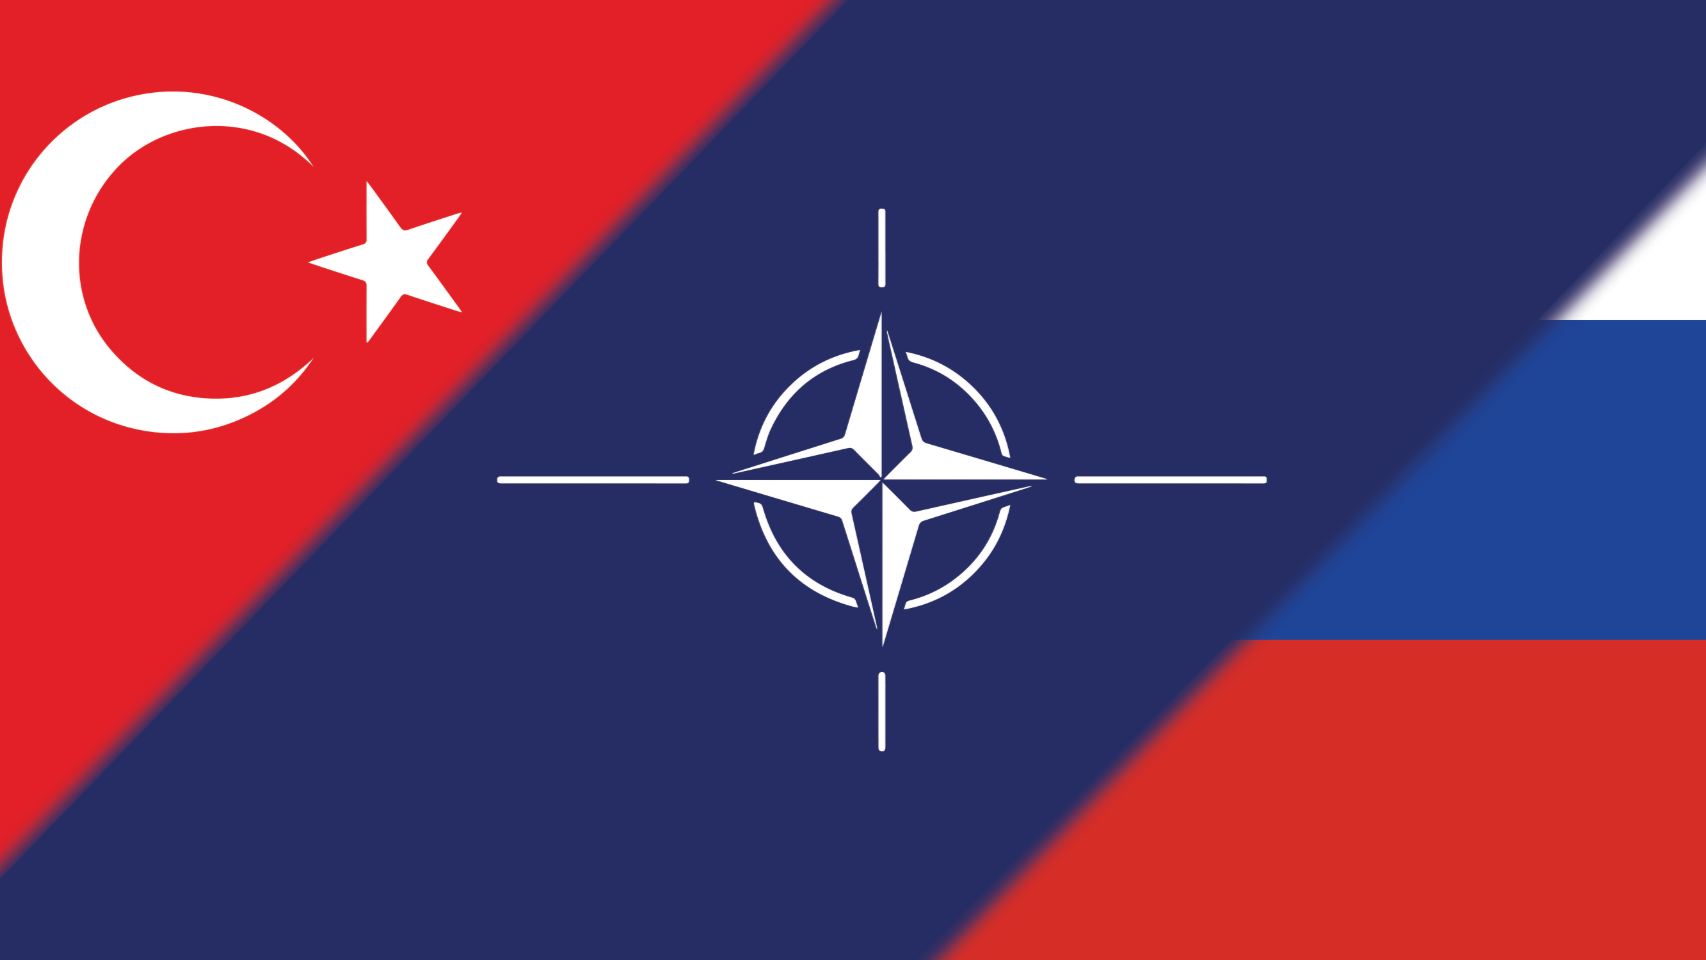 Ca ngợi mối quan hệ với Thổ Nhĩ Kỳ, Nga thâm sâu: 'NATO chỉ là NATO'